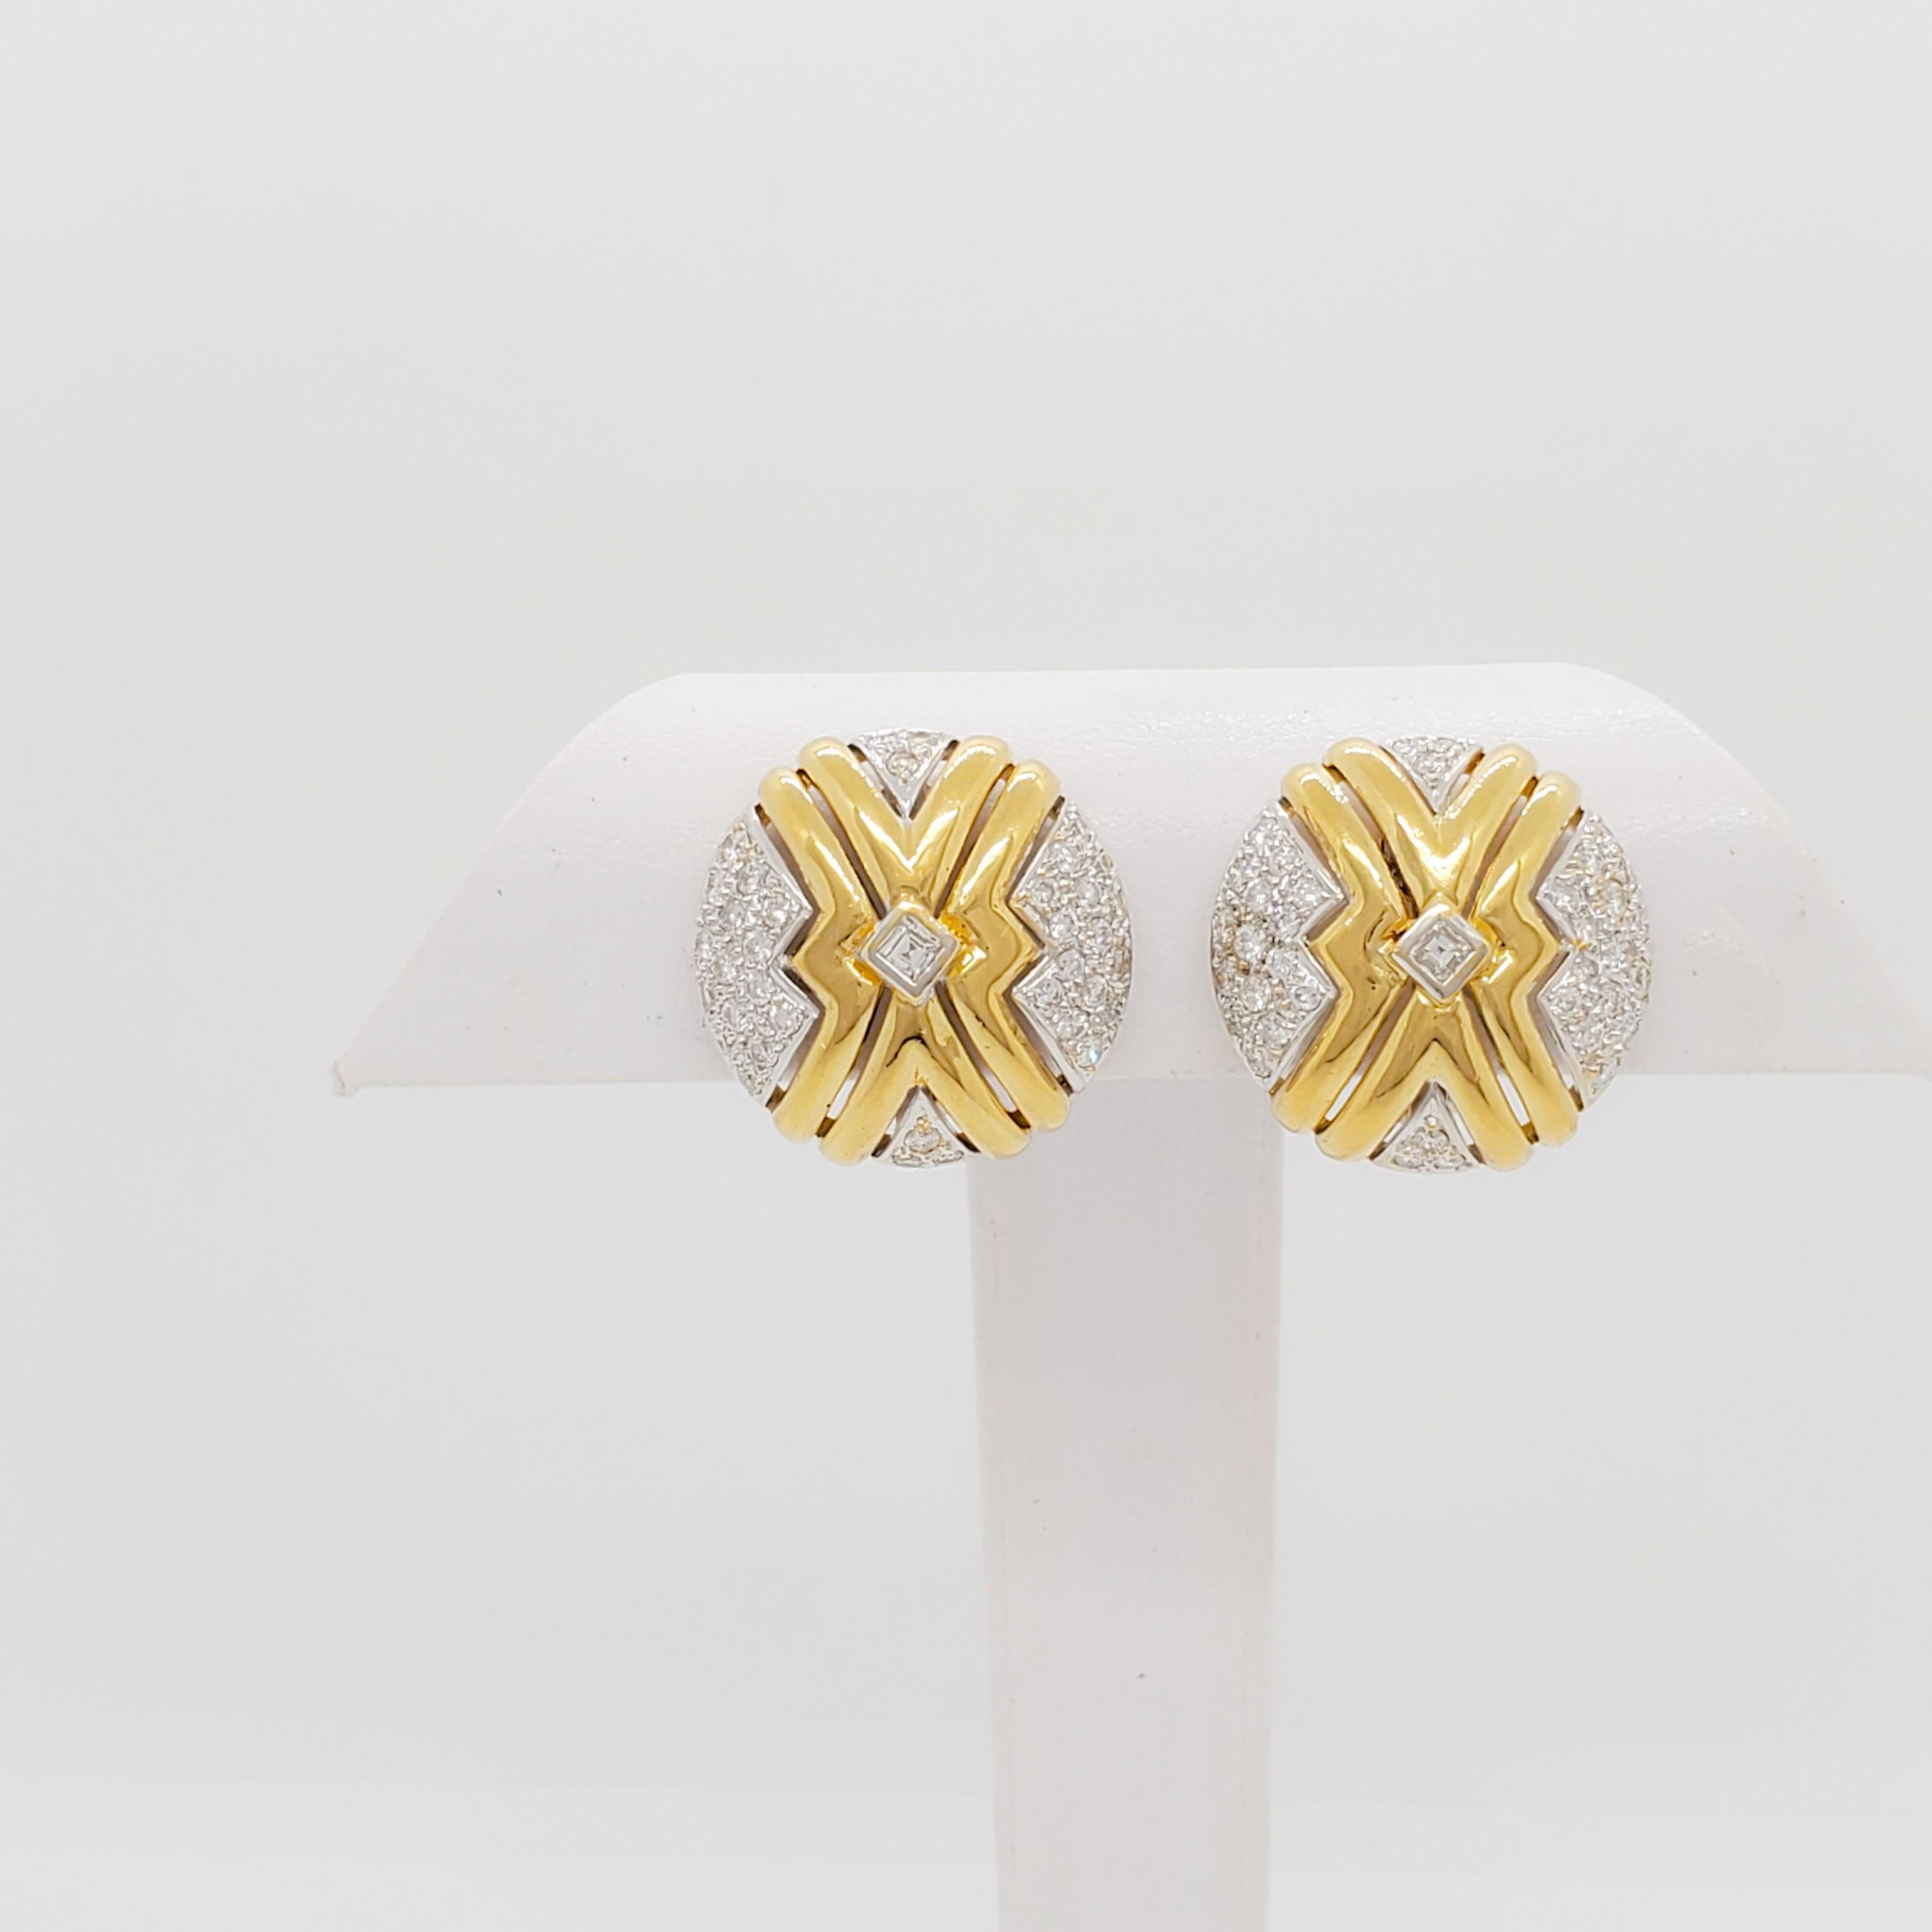 Wunderschöne Ohrringe mit runden und quadratischen weißen Diamanten von 1,50 Karat.  Handgefertigt aus 18 Karat Gelb- und Weißgold.